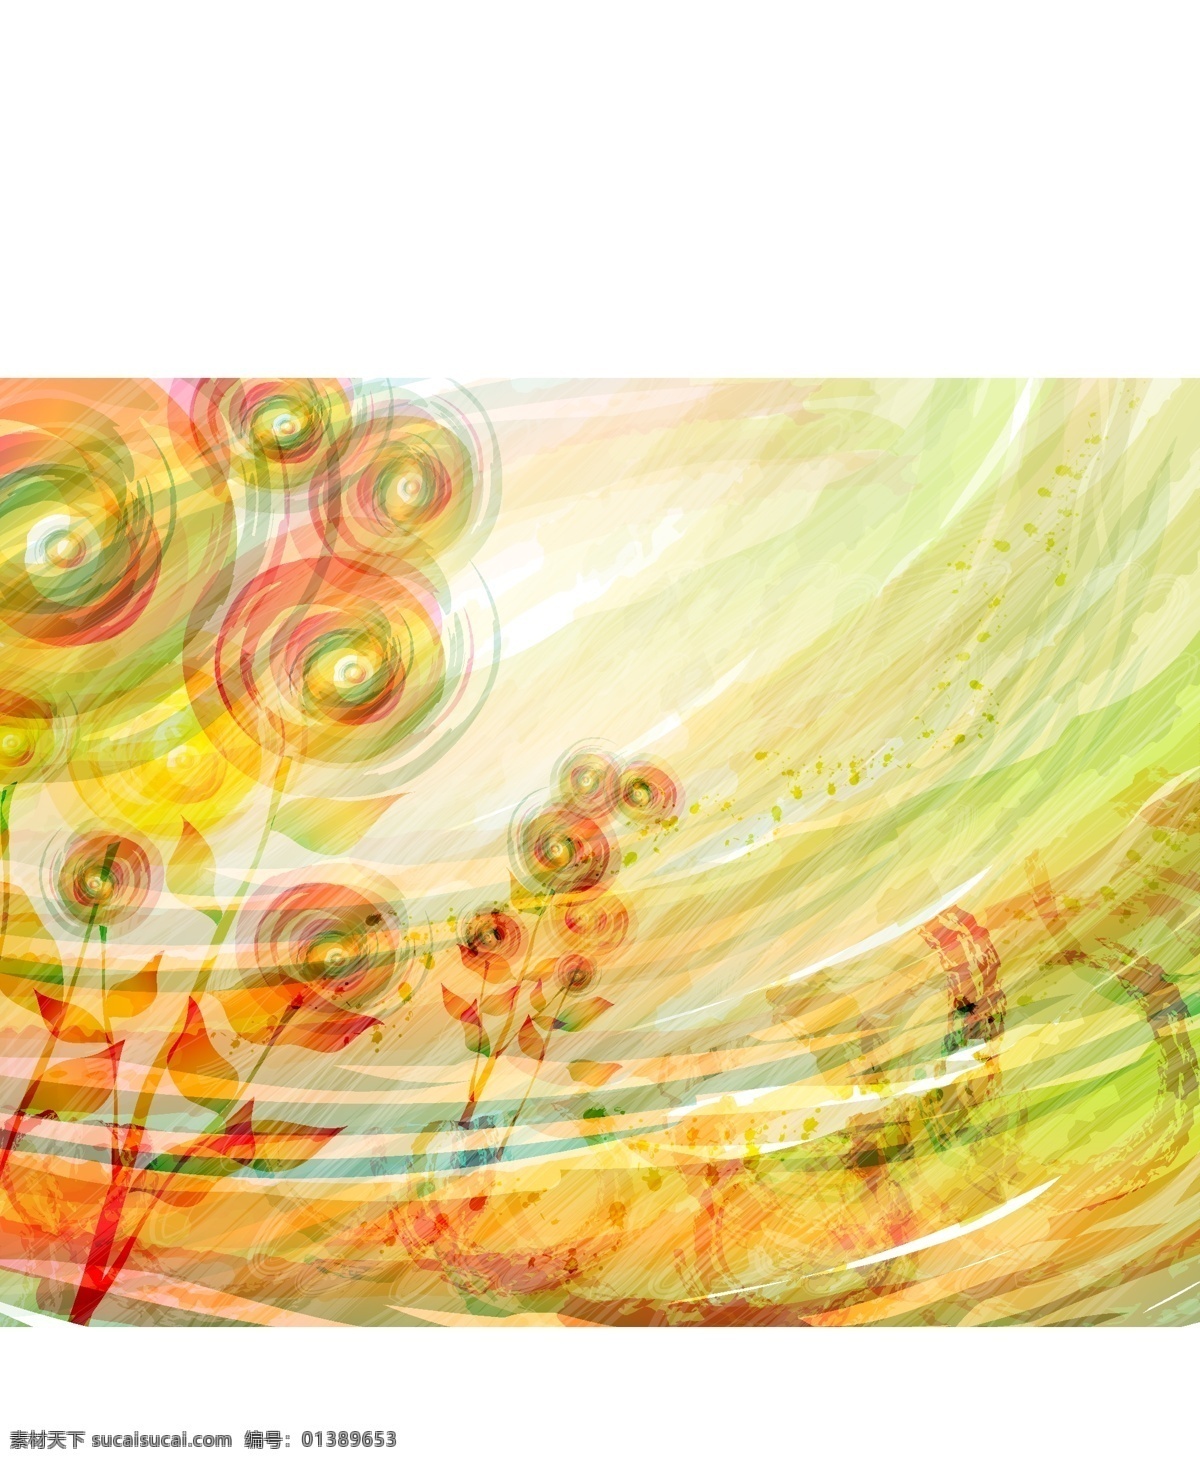 浪漫 花纹 背景 抽象 花卉 模板 色彩 设计稿 素材元素 背景ai格式 源文件 矢量图